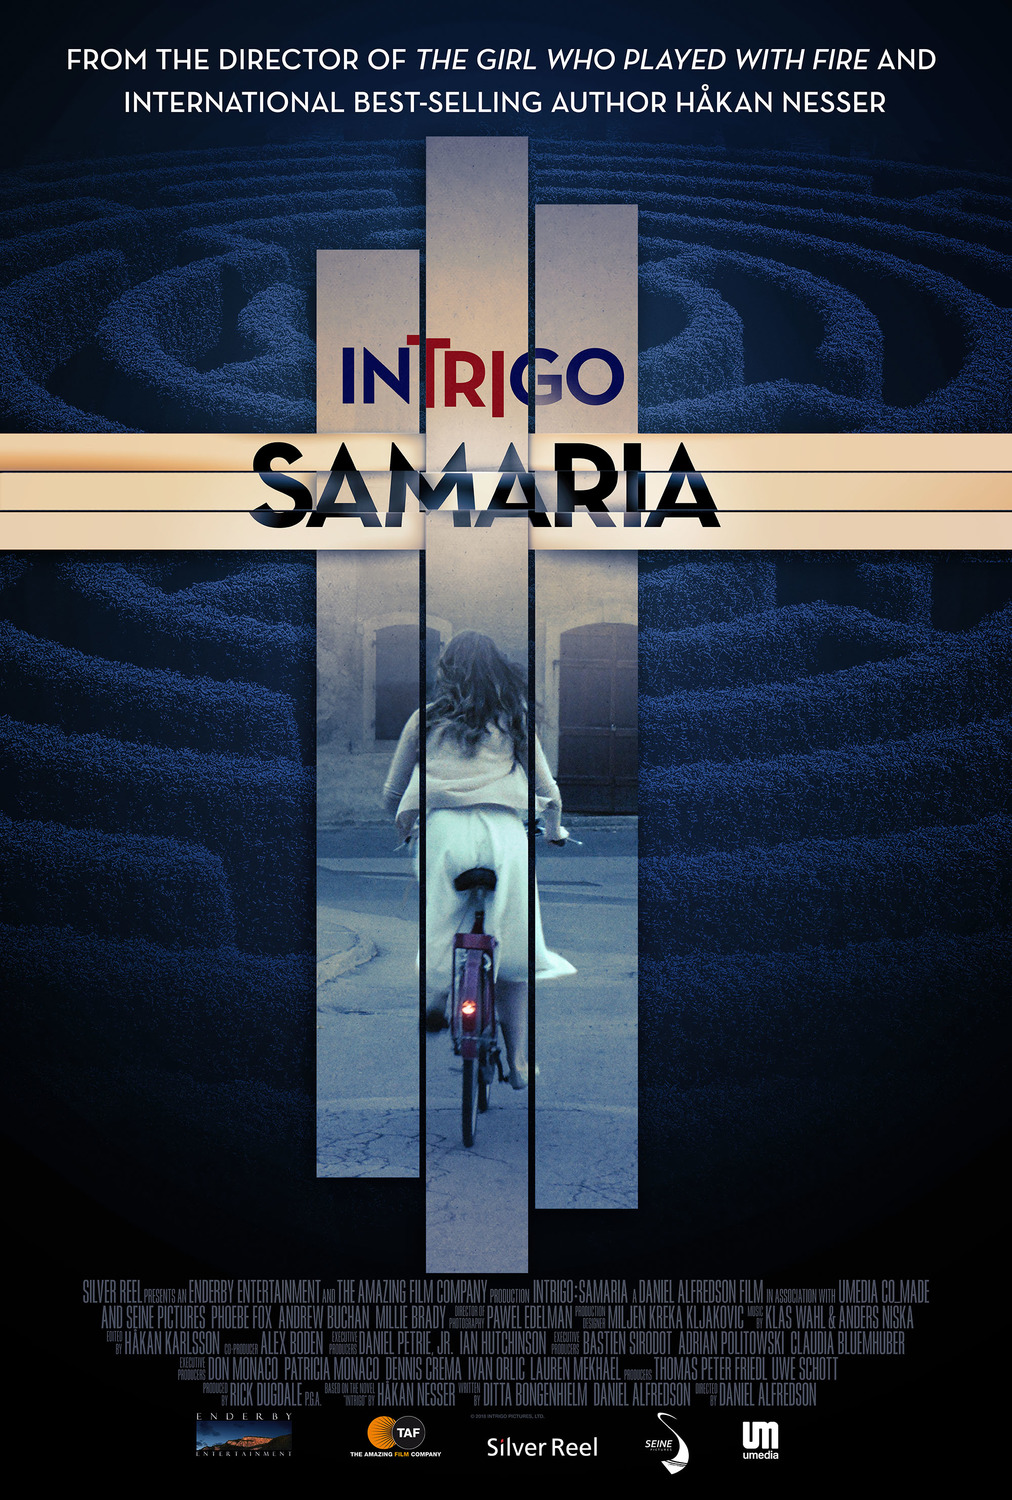 Extra Large Movie Poster Image for Intrigo: Samaria 